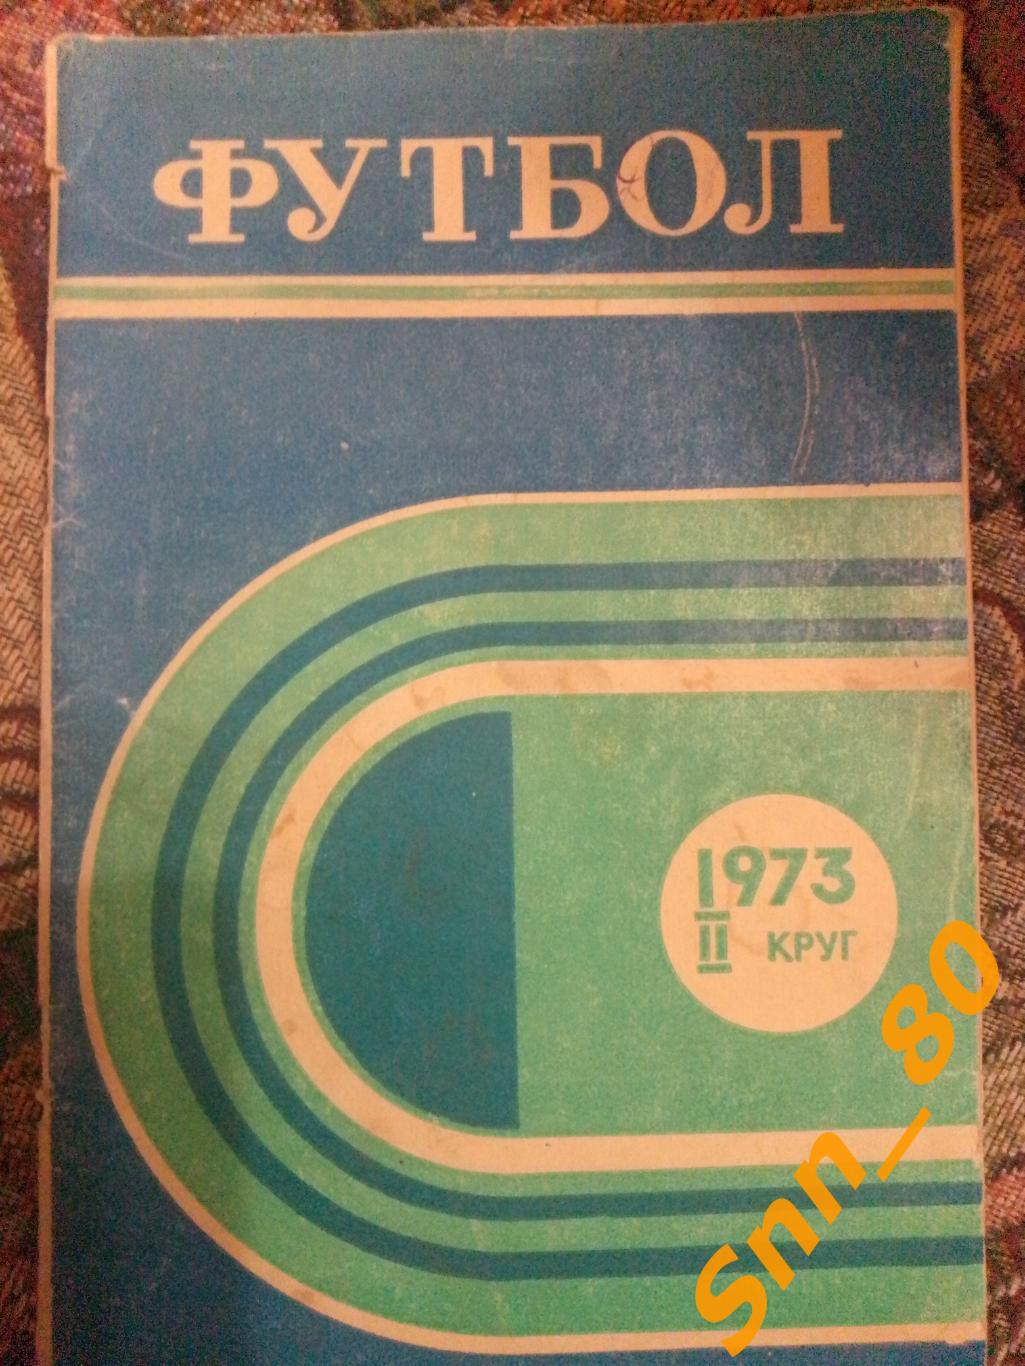 10 Календарь-справочник Ростов-на-Дону 1973 2-й круг